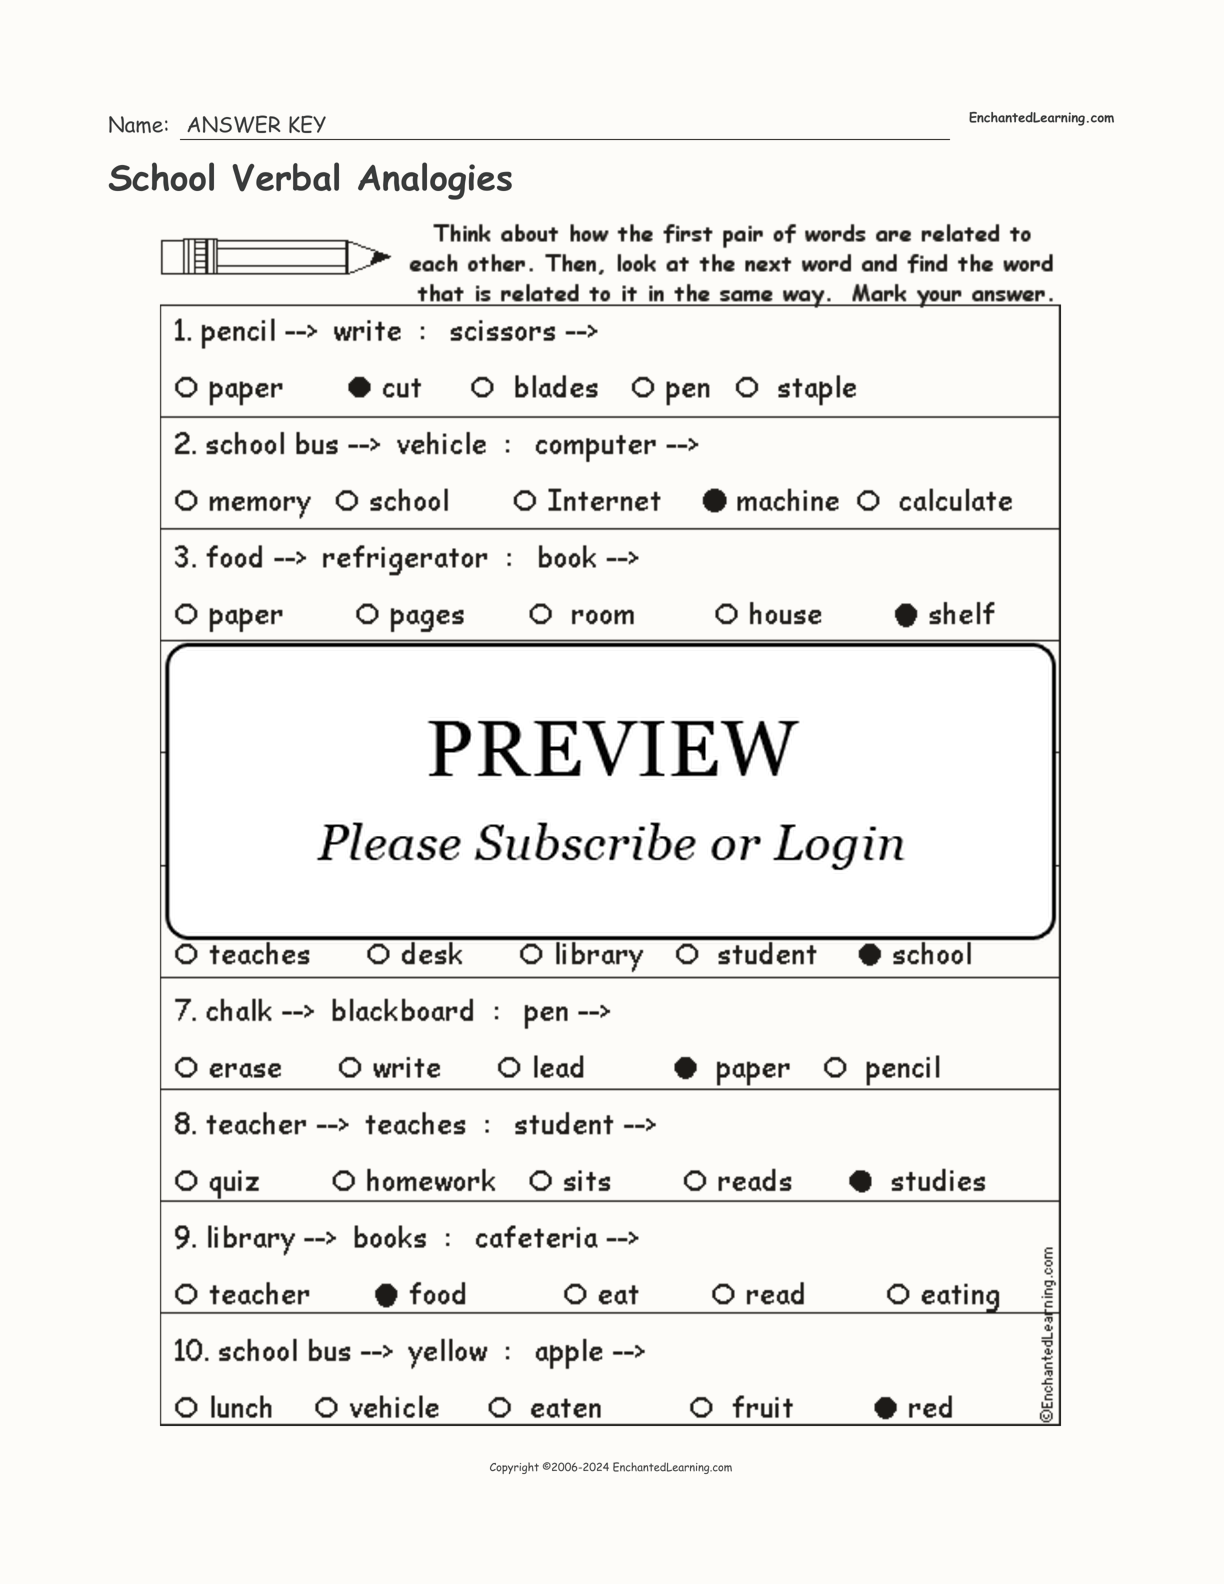 School Verbal Analogies interactive worksheet page 2